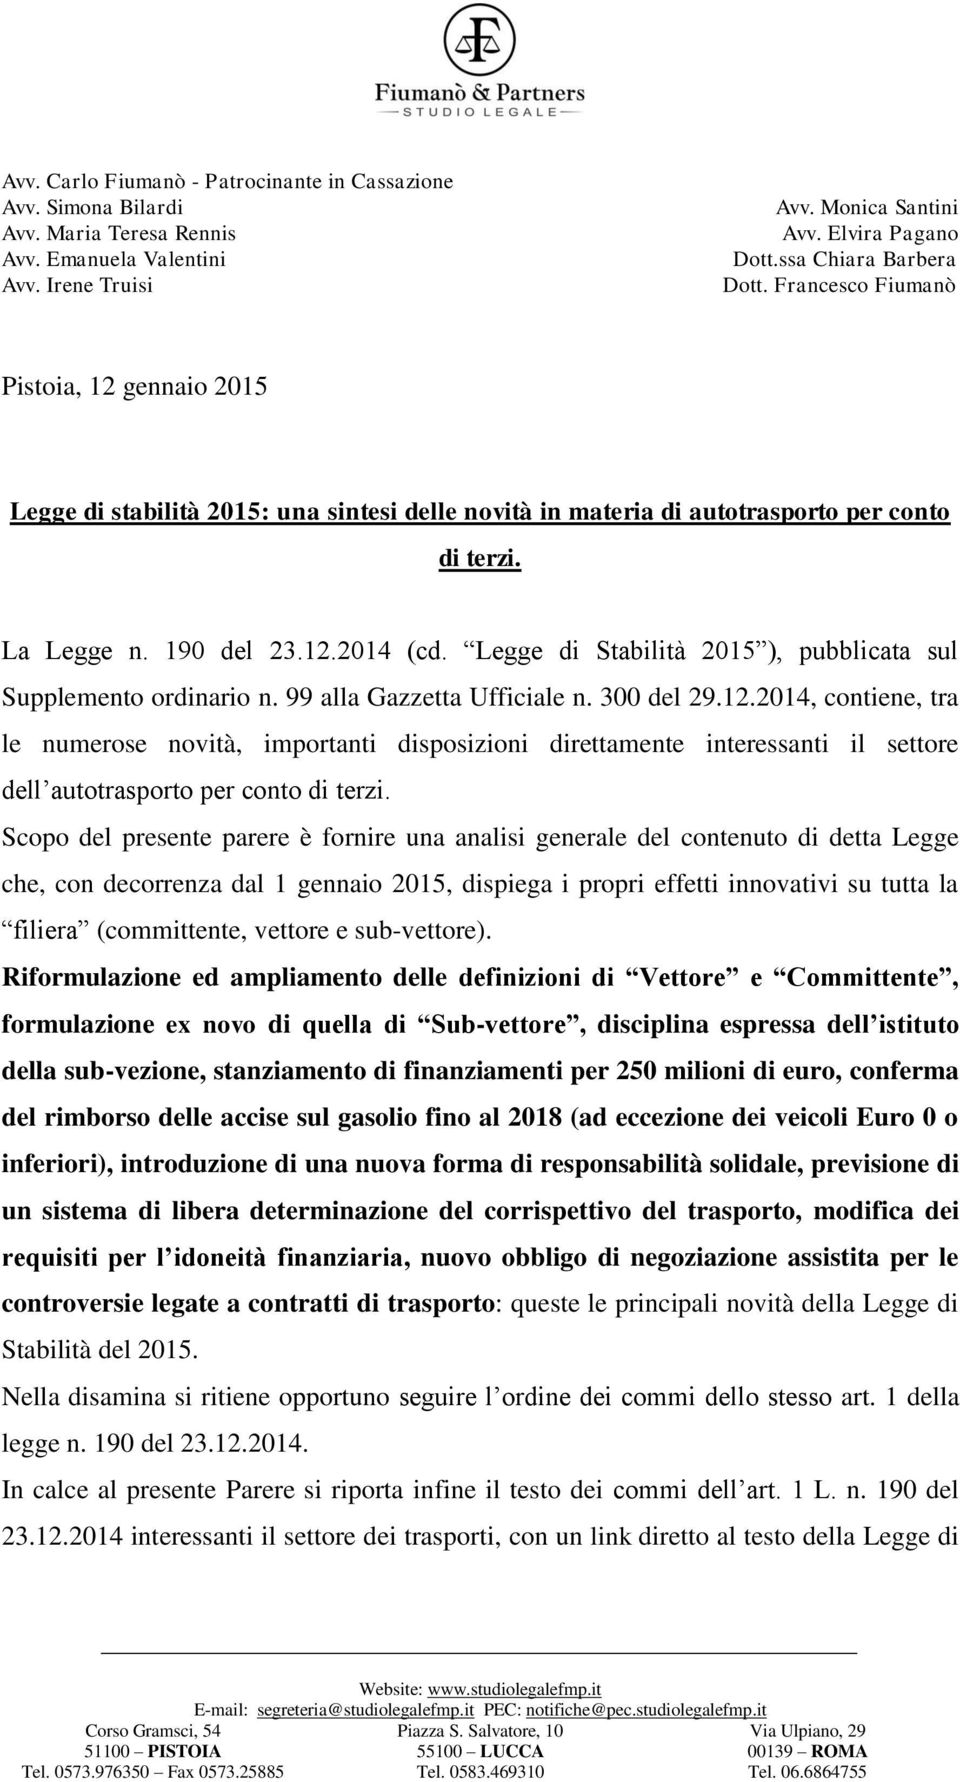 Legge di Stabilità 2015 ), pubblicata sul Supplemento ordinario n. 99 alla Gazzetta Ufficiale n. 300 del 29.12.